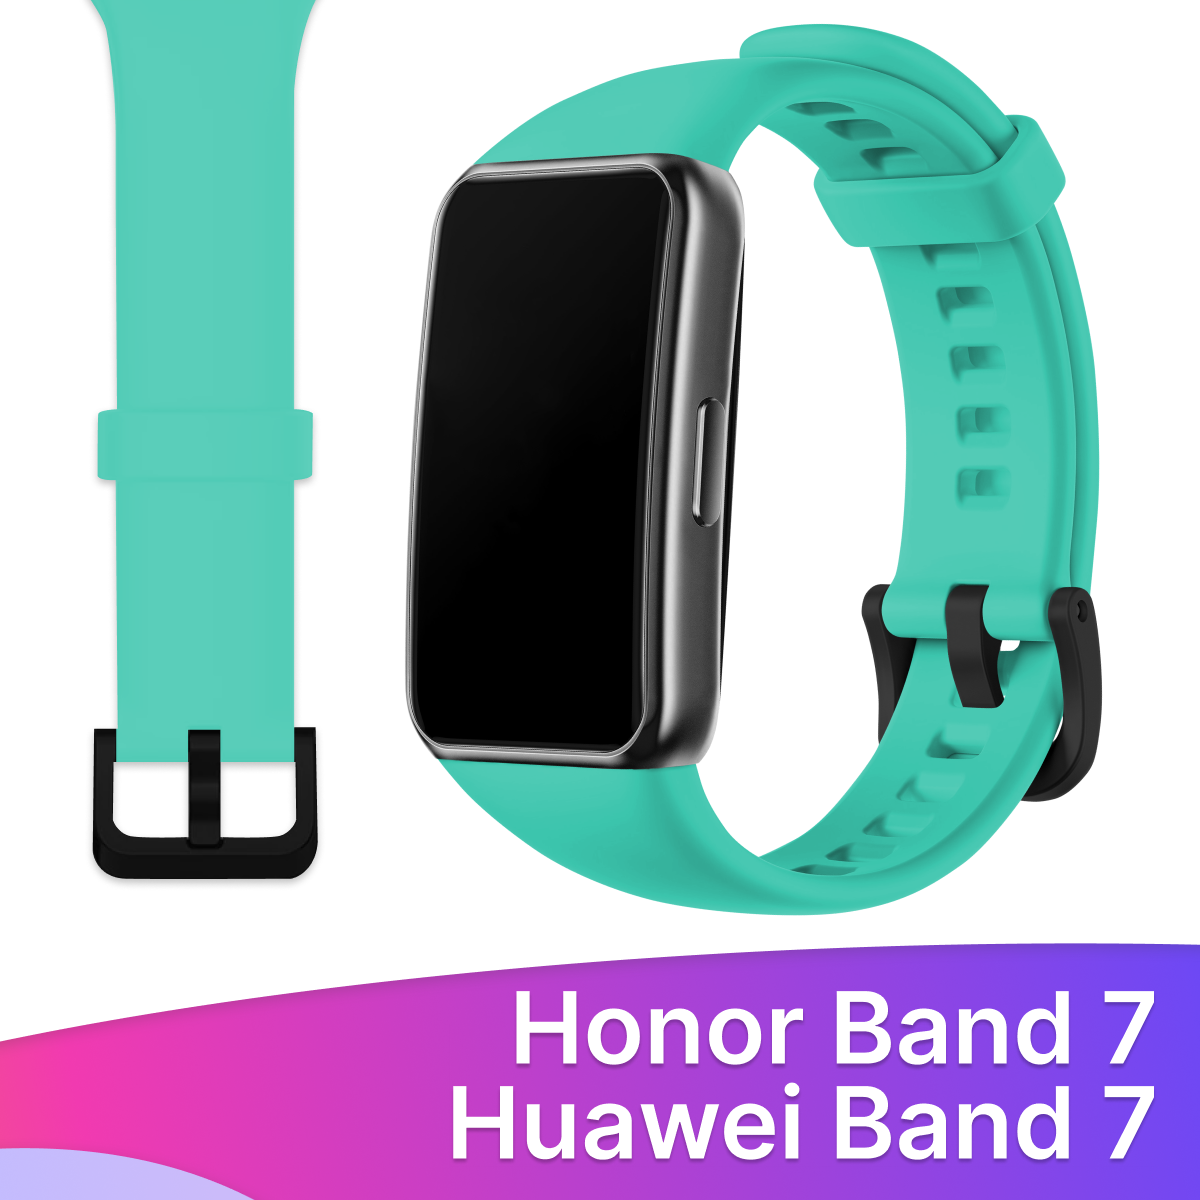 Силиконовый ремешок для Honor Band 7 и Huawei Band 7 / Сменный браслет для умных смарт часов / Фитнес трекера Хонор и Хуавей Бэнд 7, Бирюзовый